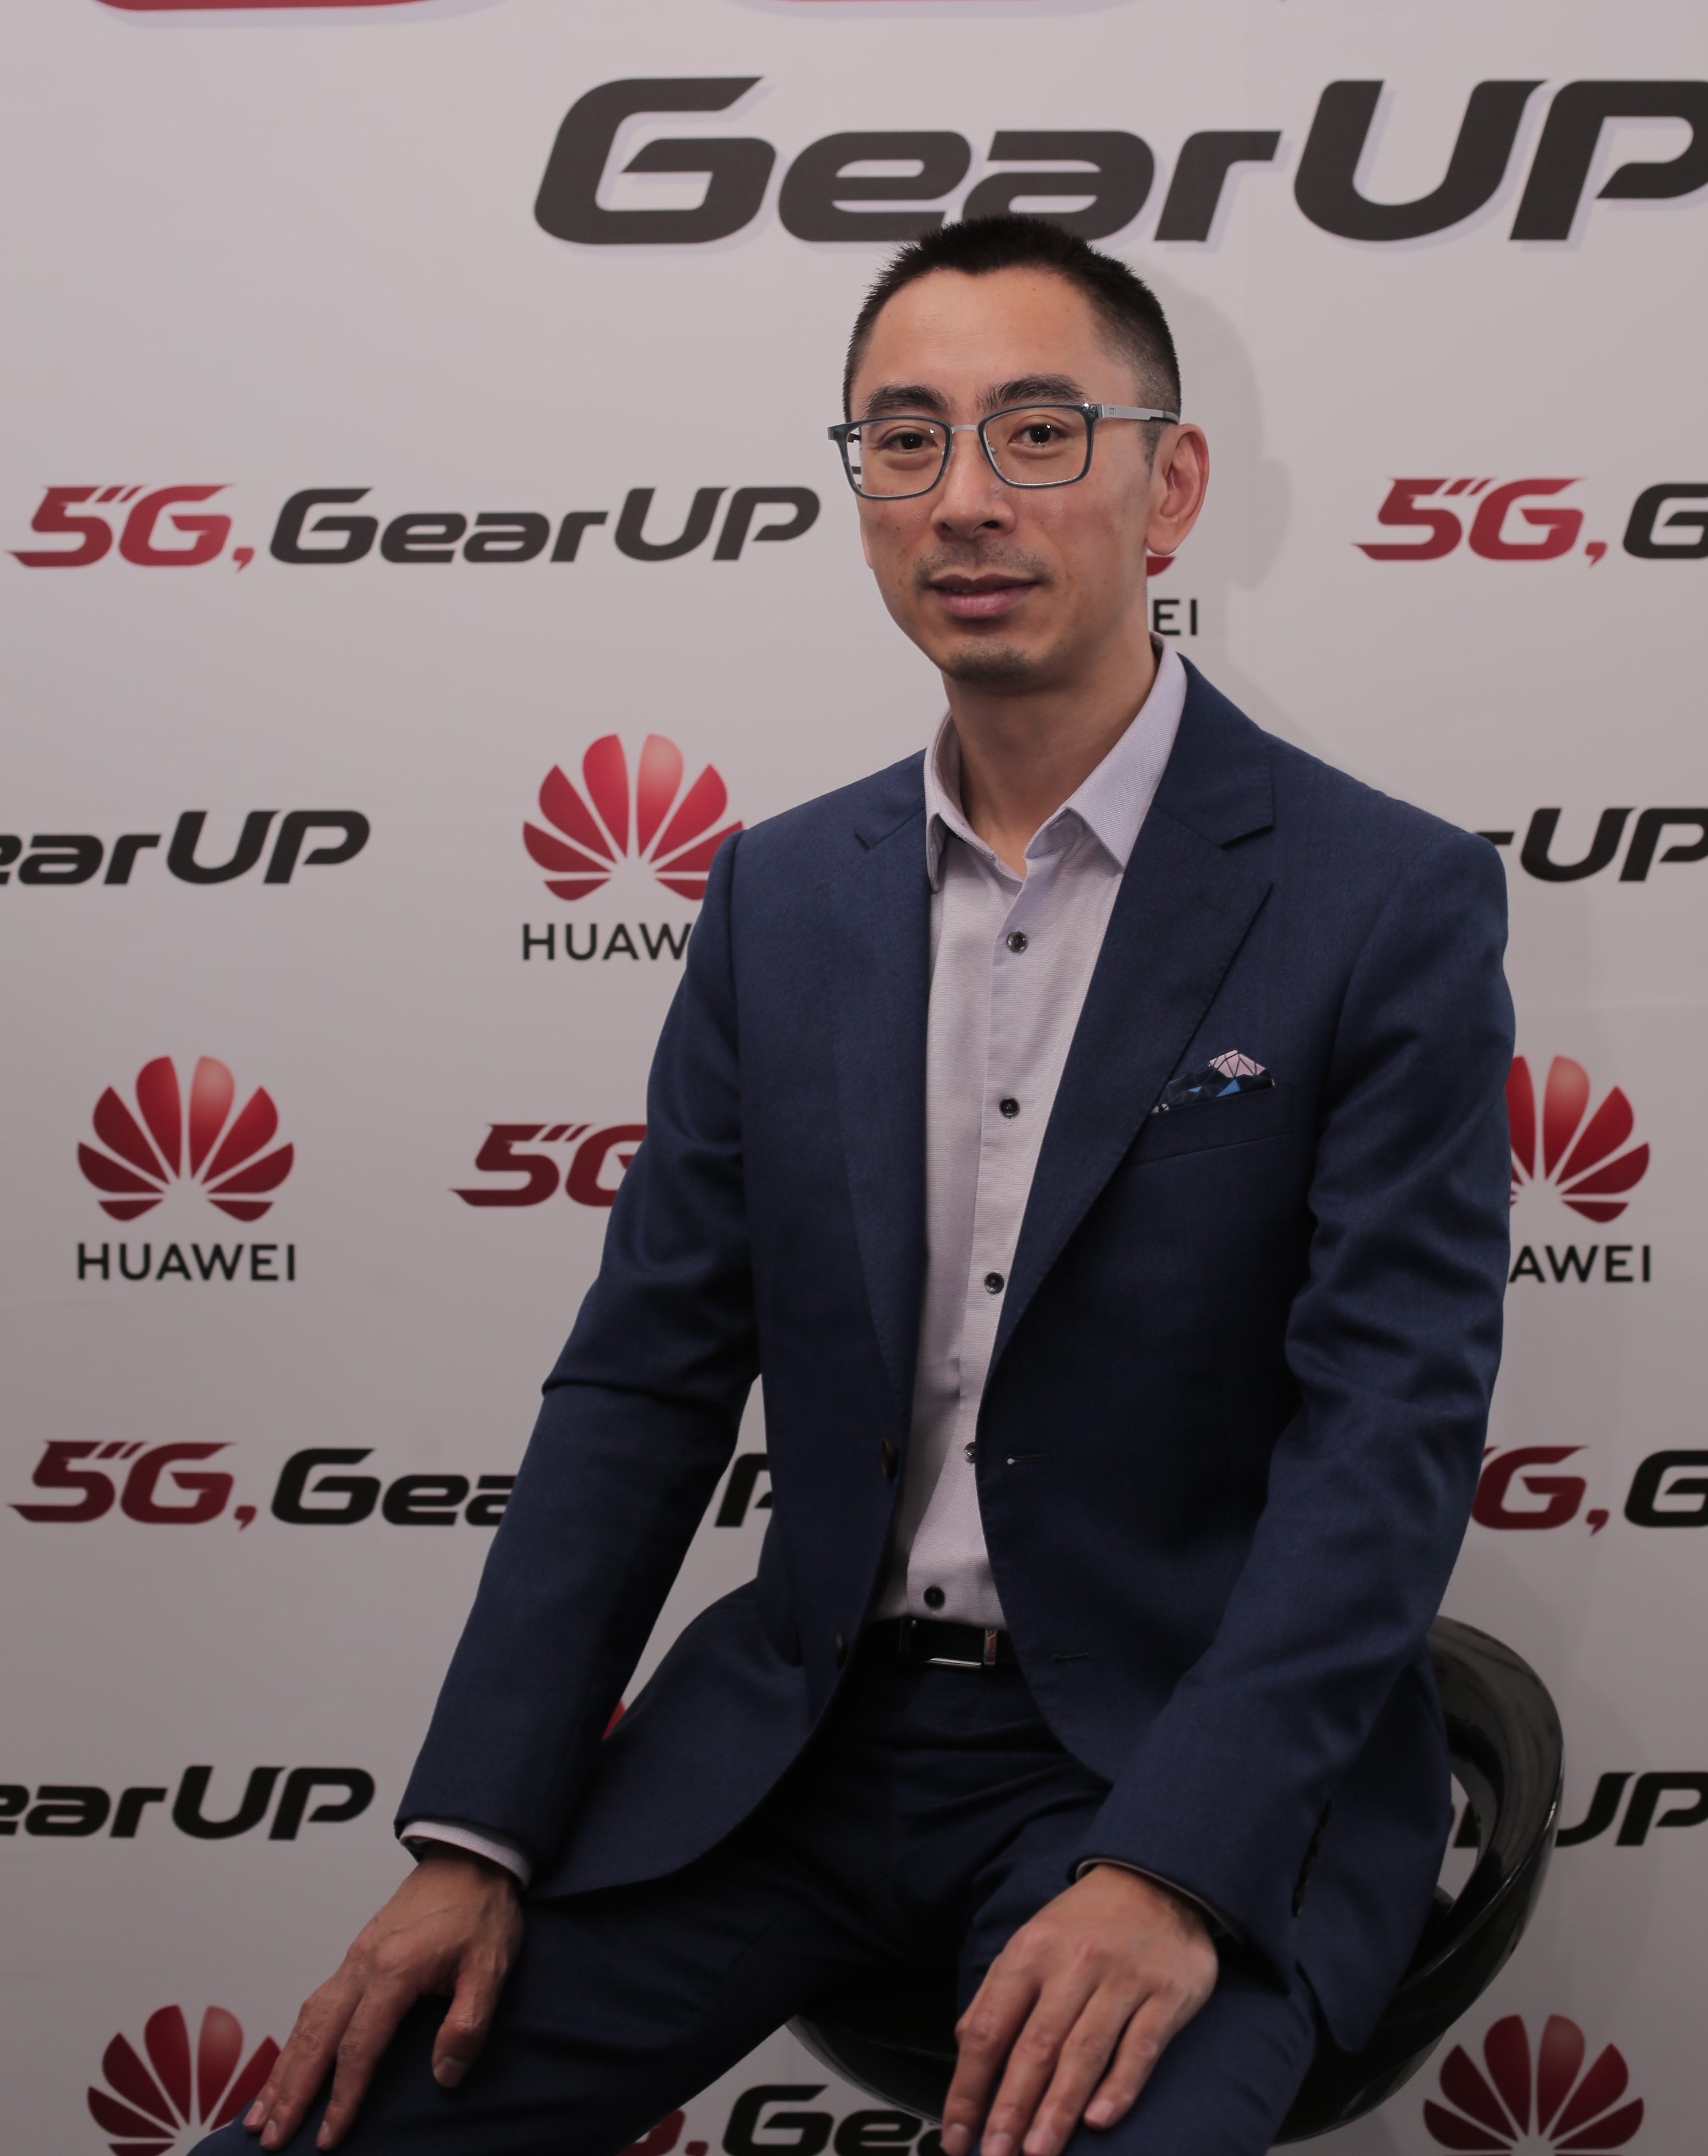 Mr Zun Zhang Tầm nhìn của Huawei tại khu vực Châu Á   Thái Bình Dương